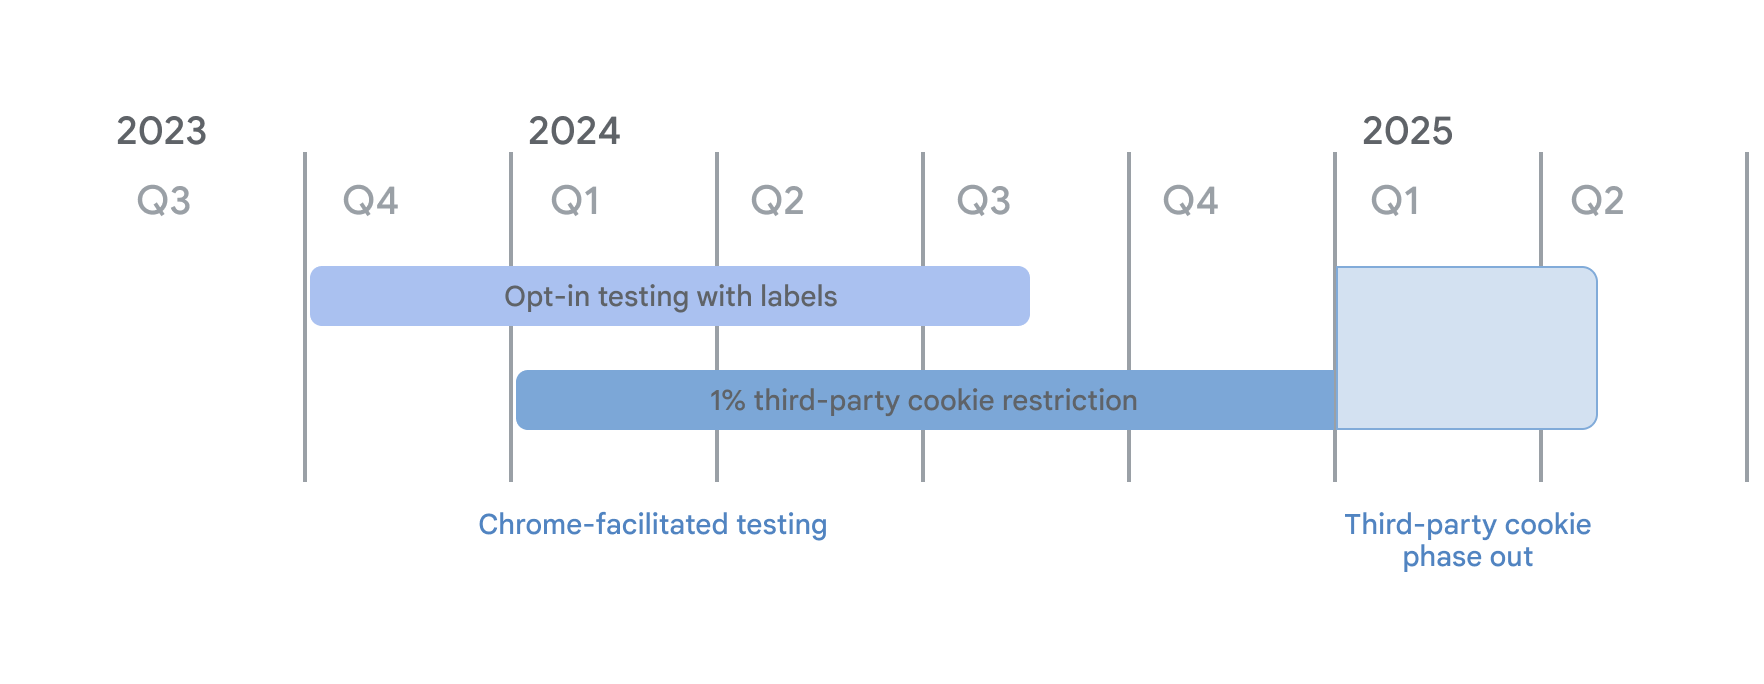 Tiến trình gỡ bỏ cookie của bên thứ ba. Trong quá trình thử nghiệm trên nền tảng Chrome, chế độ kiểm thử chọn tham gia bằng nhãn bắt đầu vào quý 4 năm 2023 và áp dụng các quy định hạn chế đối với 1% 3PC từ ngày 4 tháng 1 năm 2024. Cả hai sẽ tiếp tục cho đến hết Quý 1 năm 2025 khi quá trình loại bỏ cookie của bên thứ ba bắt đầu.